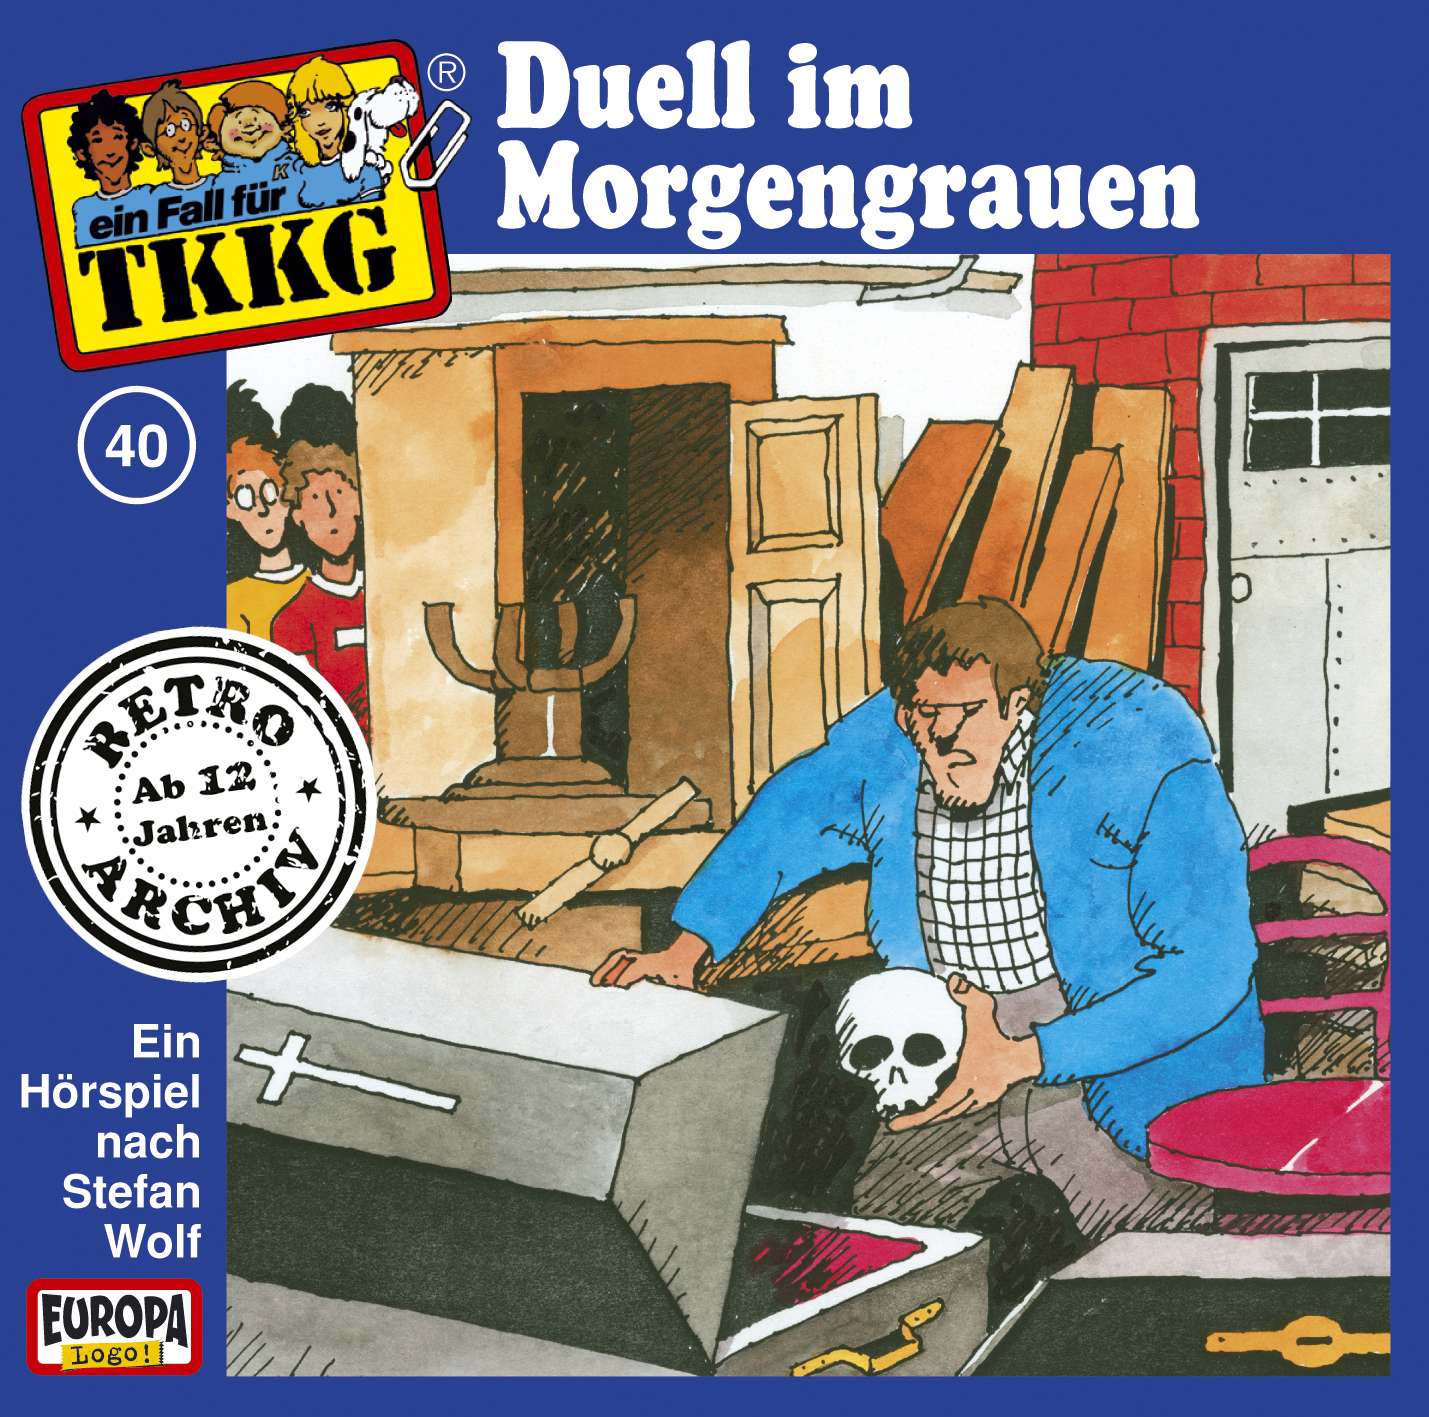 TKKG Retro-Archiv - Duell im Morgengrauen